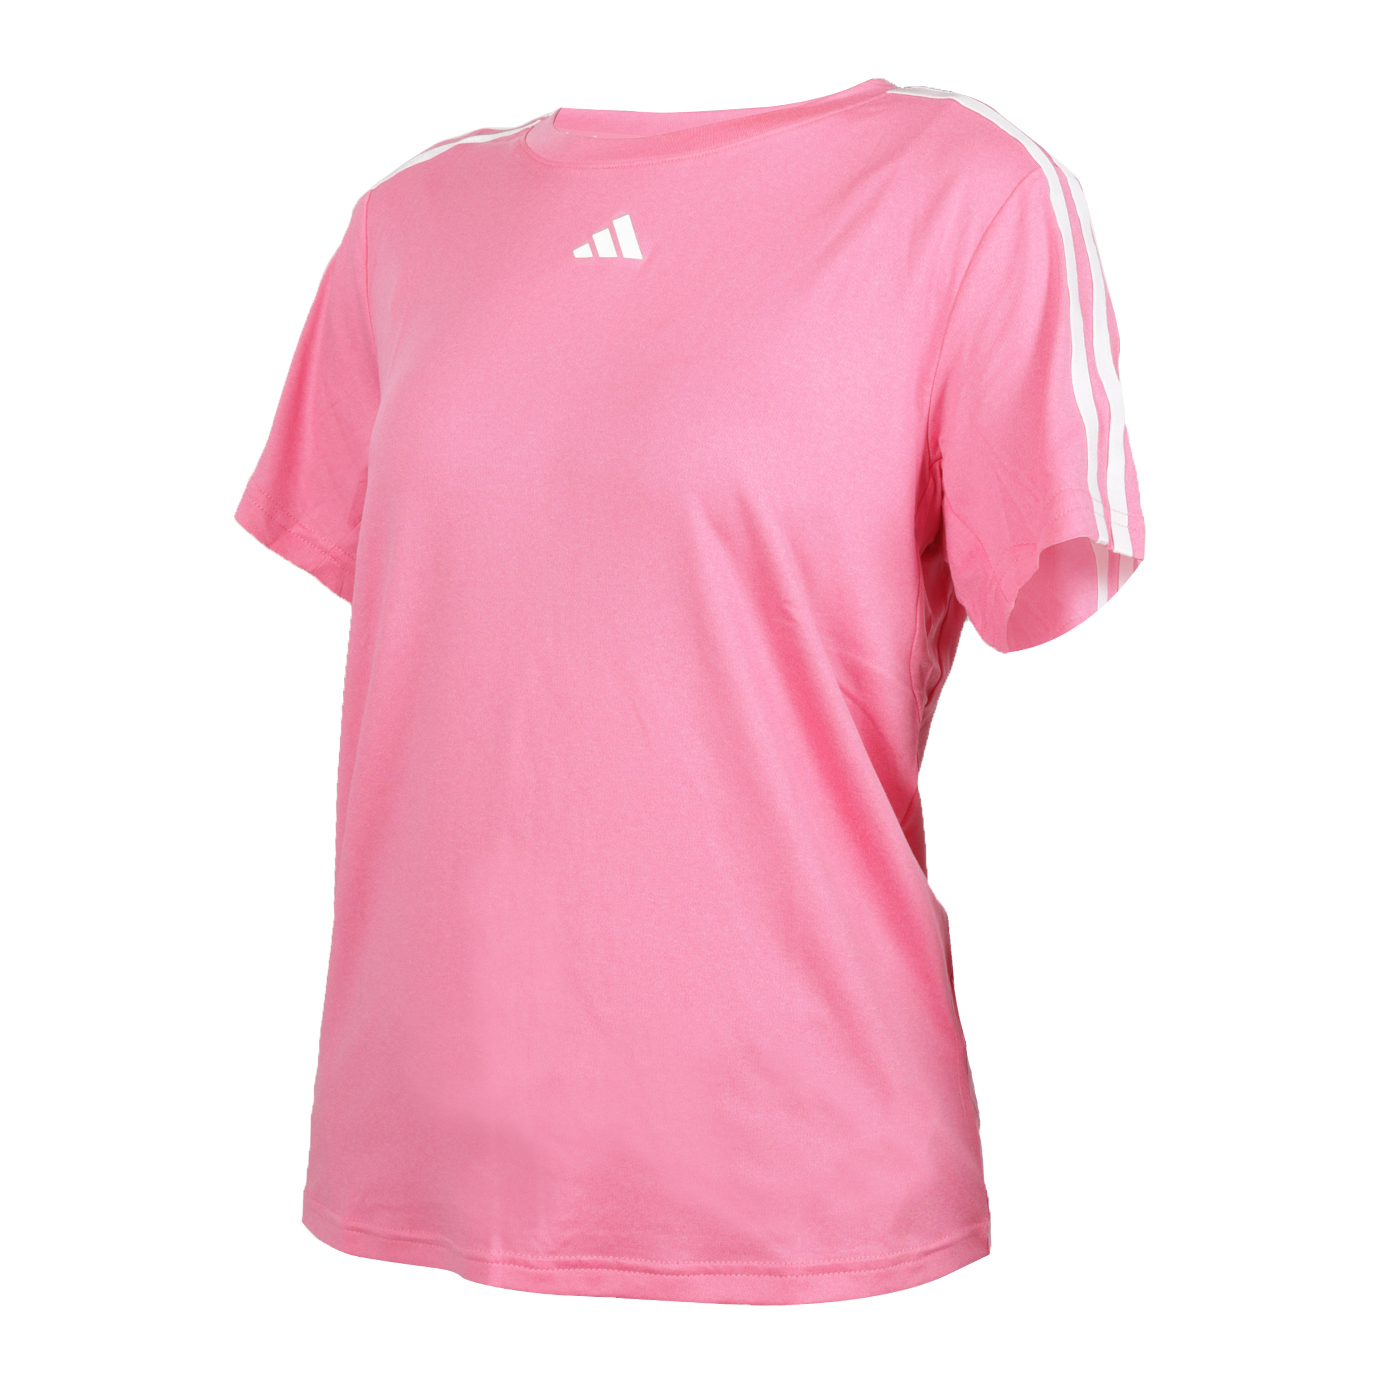 ADIDAS 女款短袖T恤  HZ5688 - 粉紅白